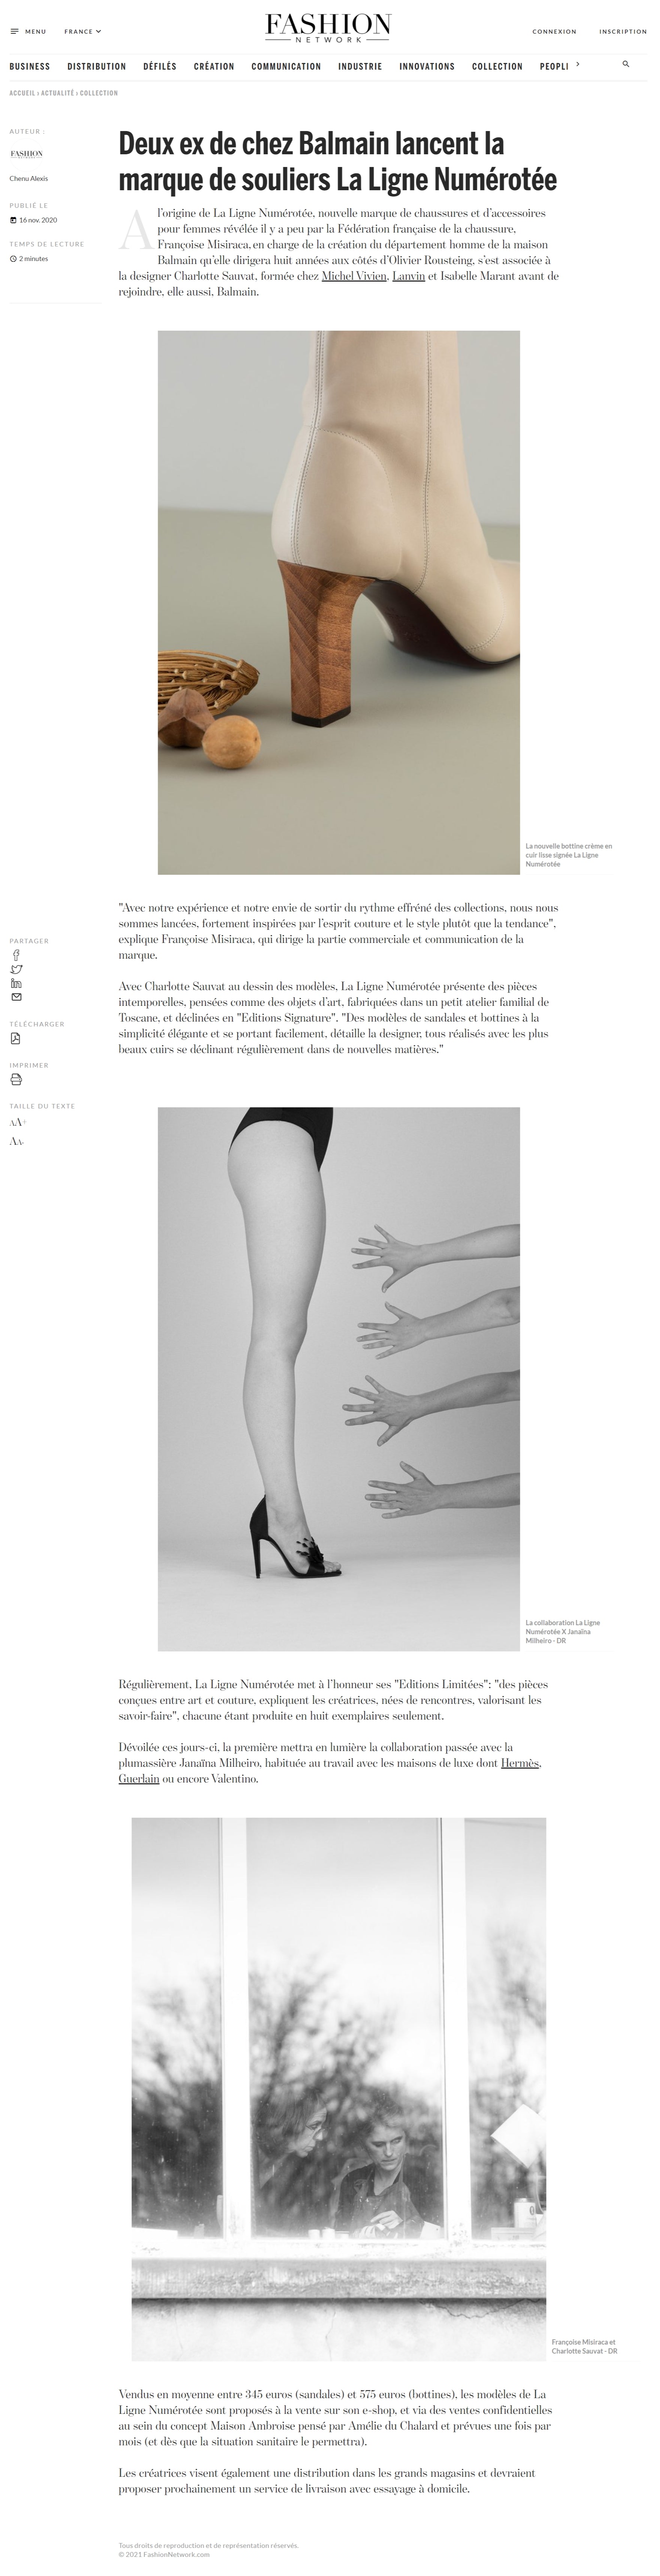 Deux ex de chez Balmain, Francoise Misiraca et Charlotte Sauvat lancent la marque de souliers La Ligne Numérotée -  Fashion Network, 16 novembre 2020 